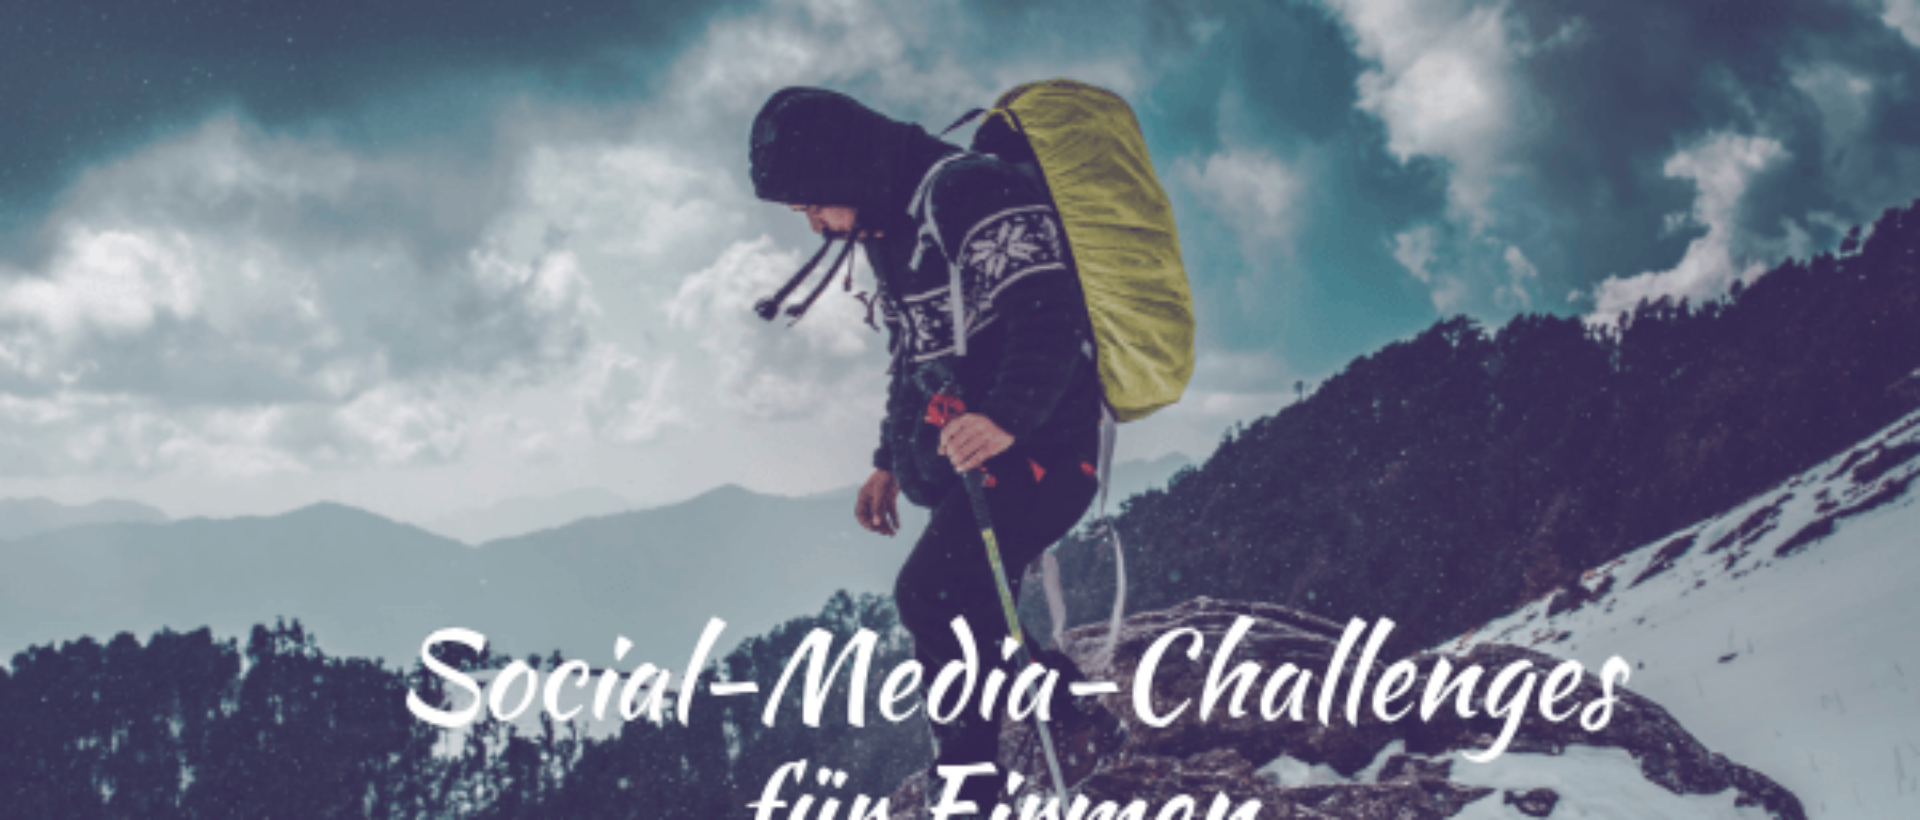 Ein Bergsteiger steht auf dem Gipfel und hat den Aufstieg bewältigt. In weissem Text davor steht Social-Media-Challenges für Firmen. Das Bild symbolisiert die Challenge.